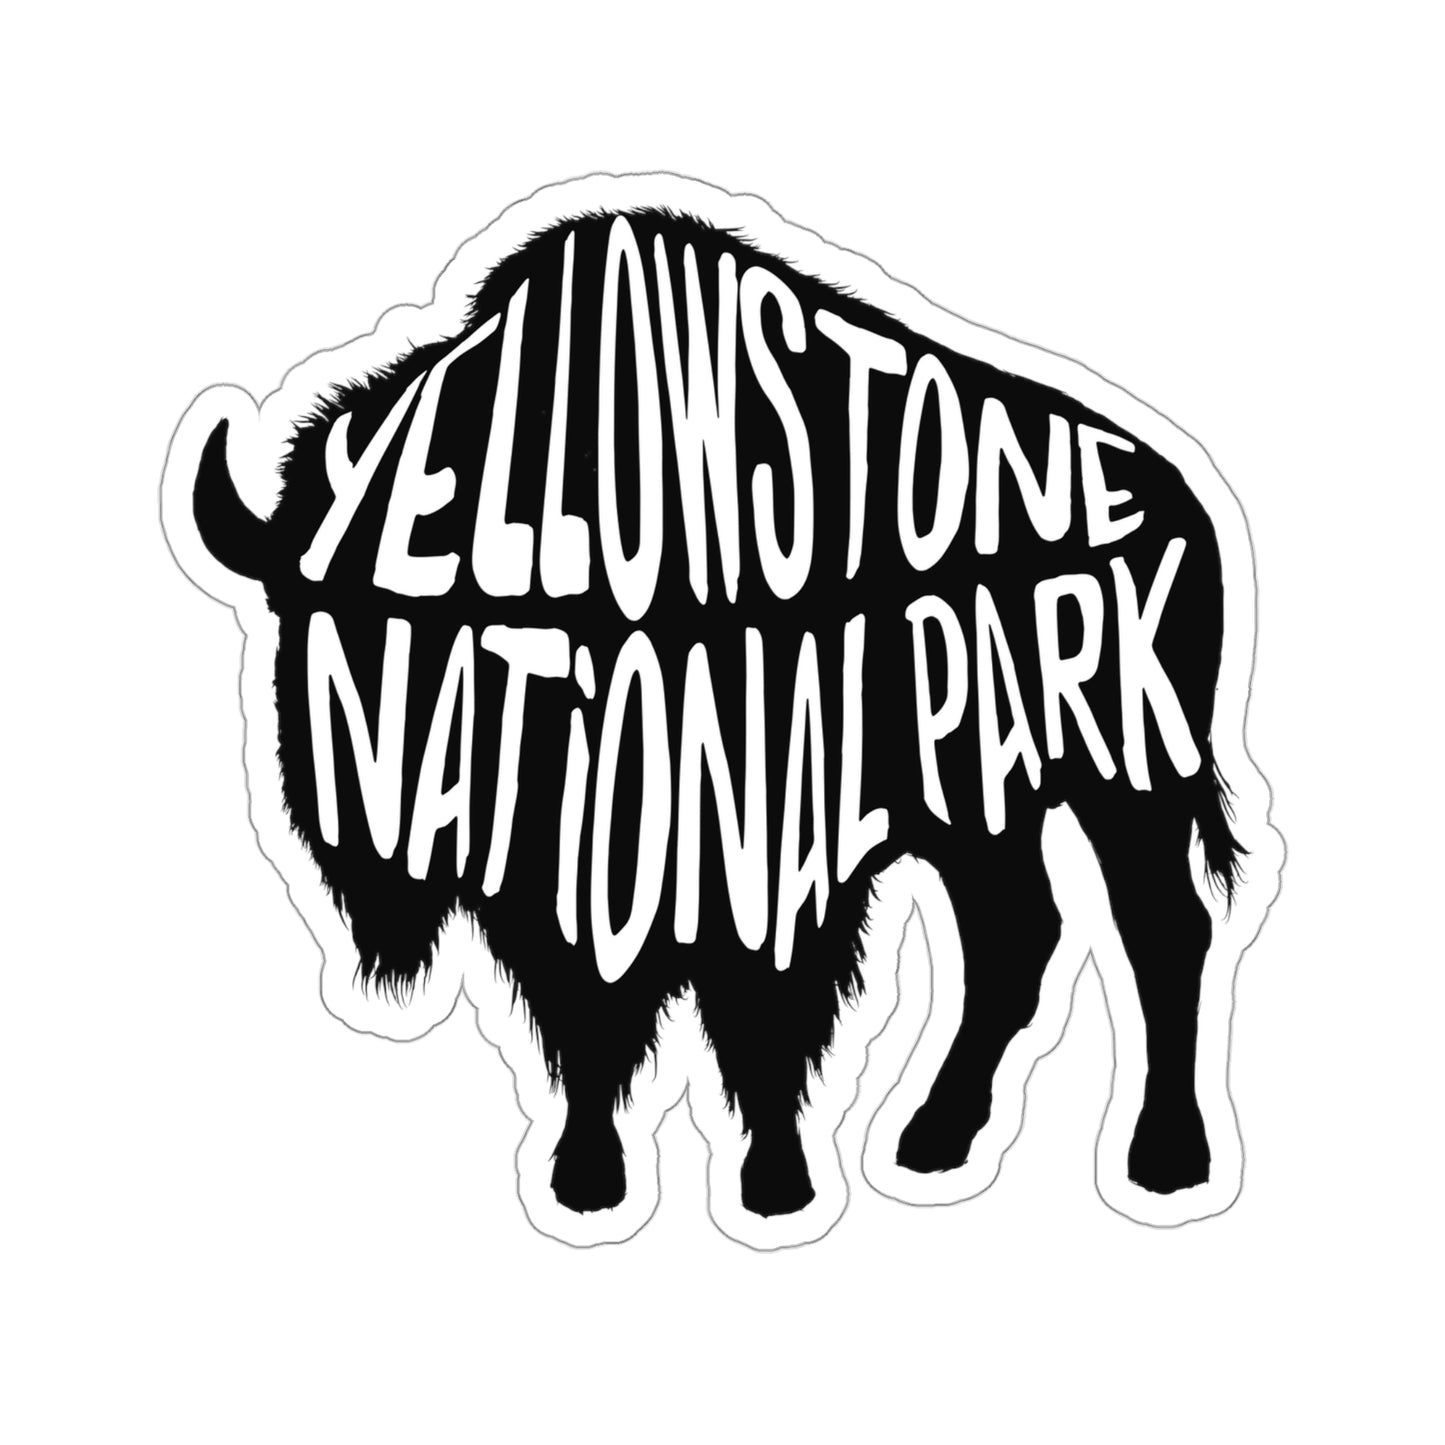 Yellowstone National Park Sticker - Bison